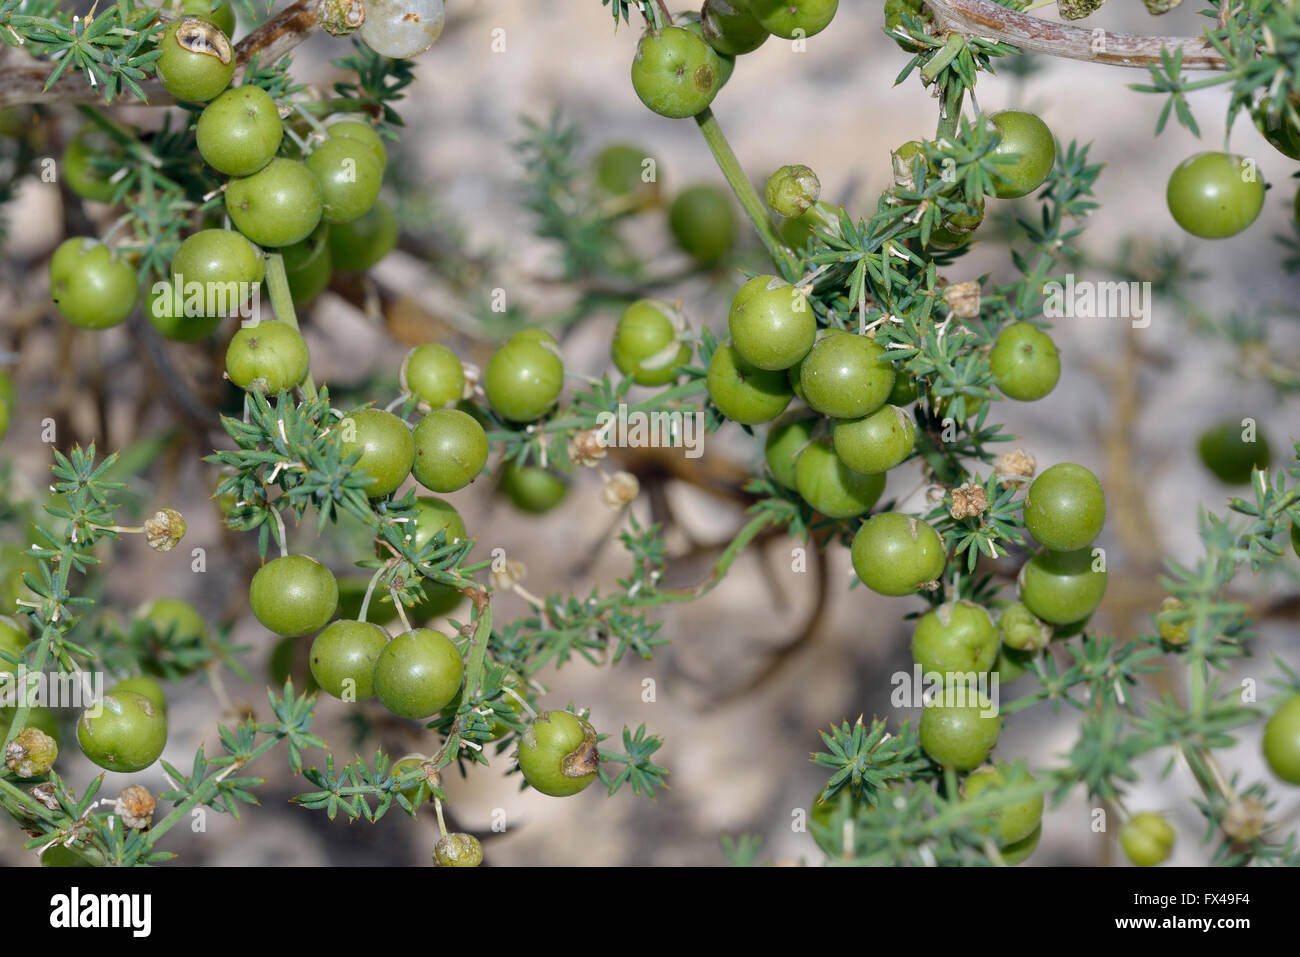 Mediterrane wilder Spargel - Spargel Acutifolius Blätter & Obst Stockfoto